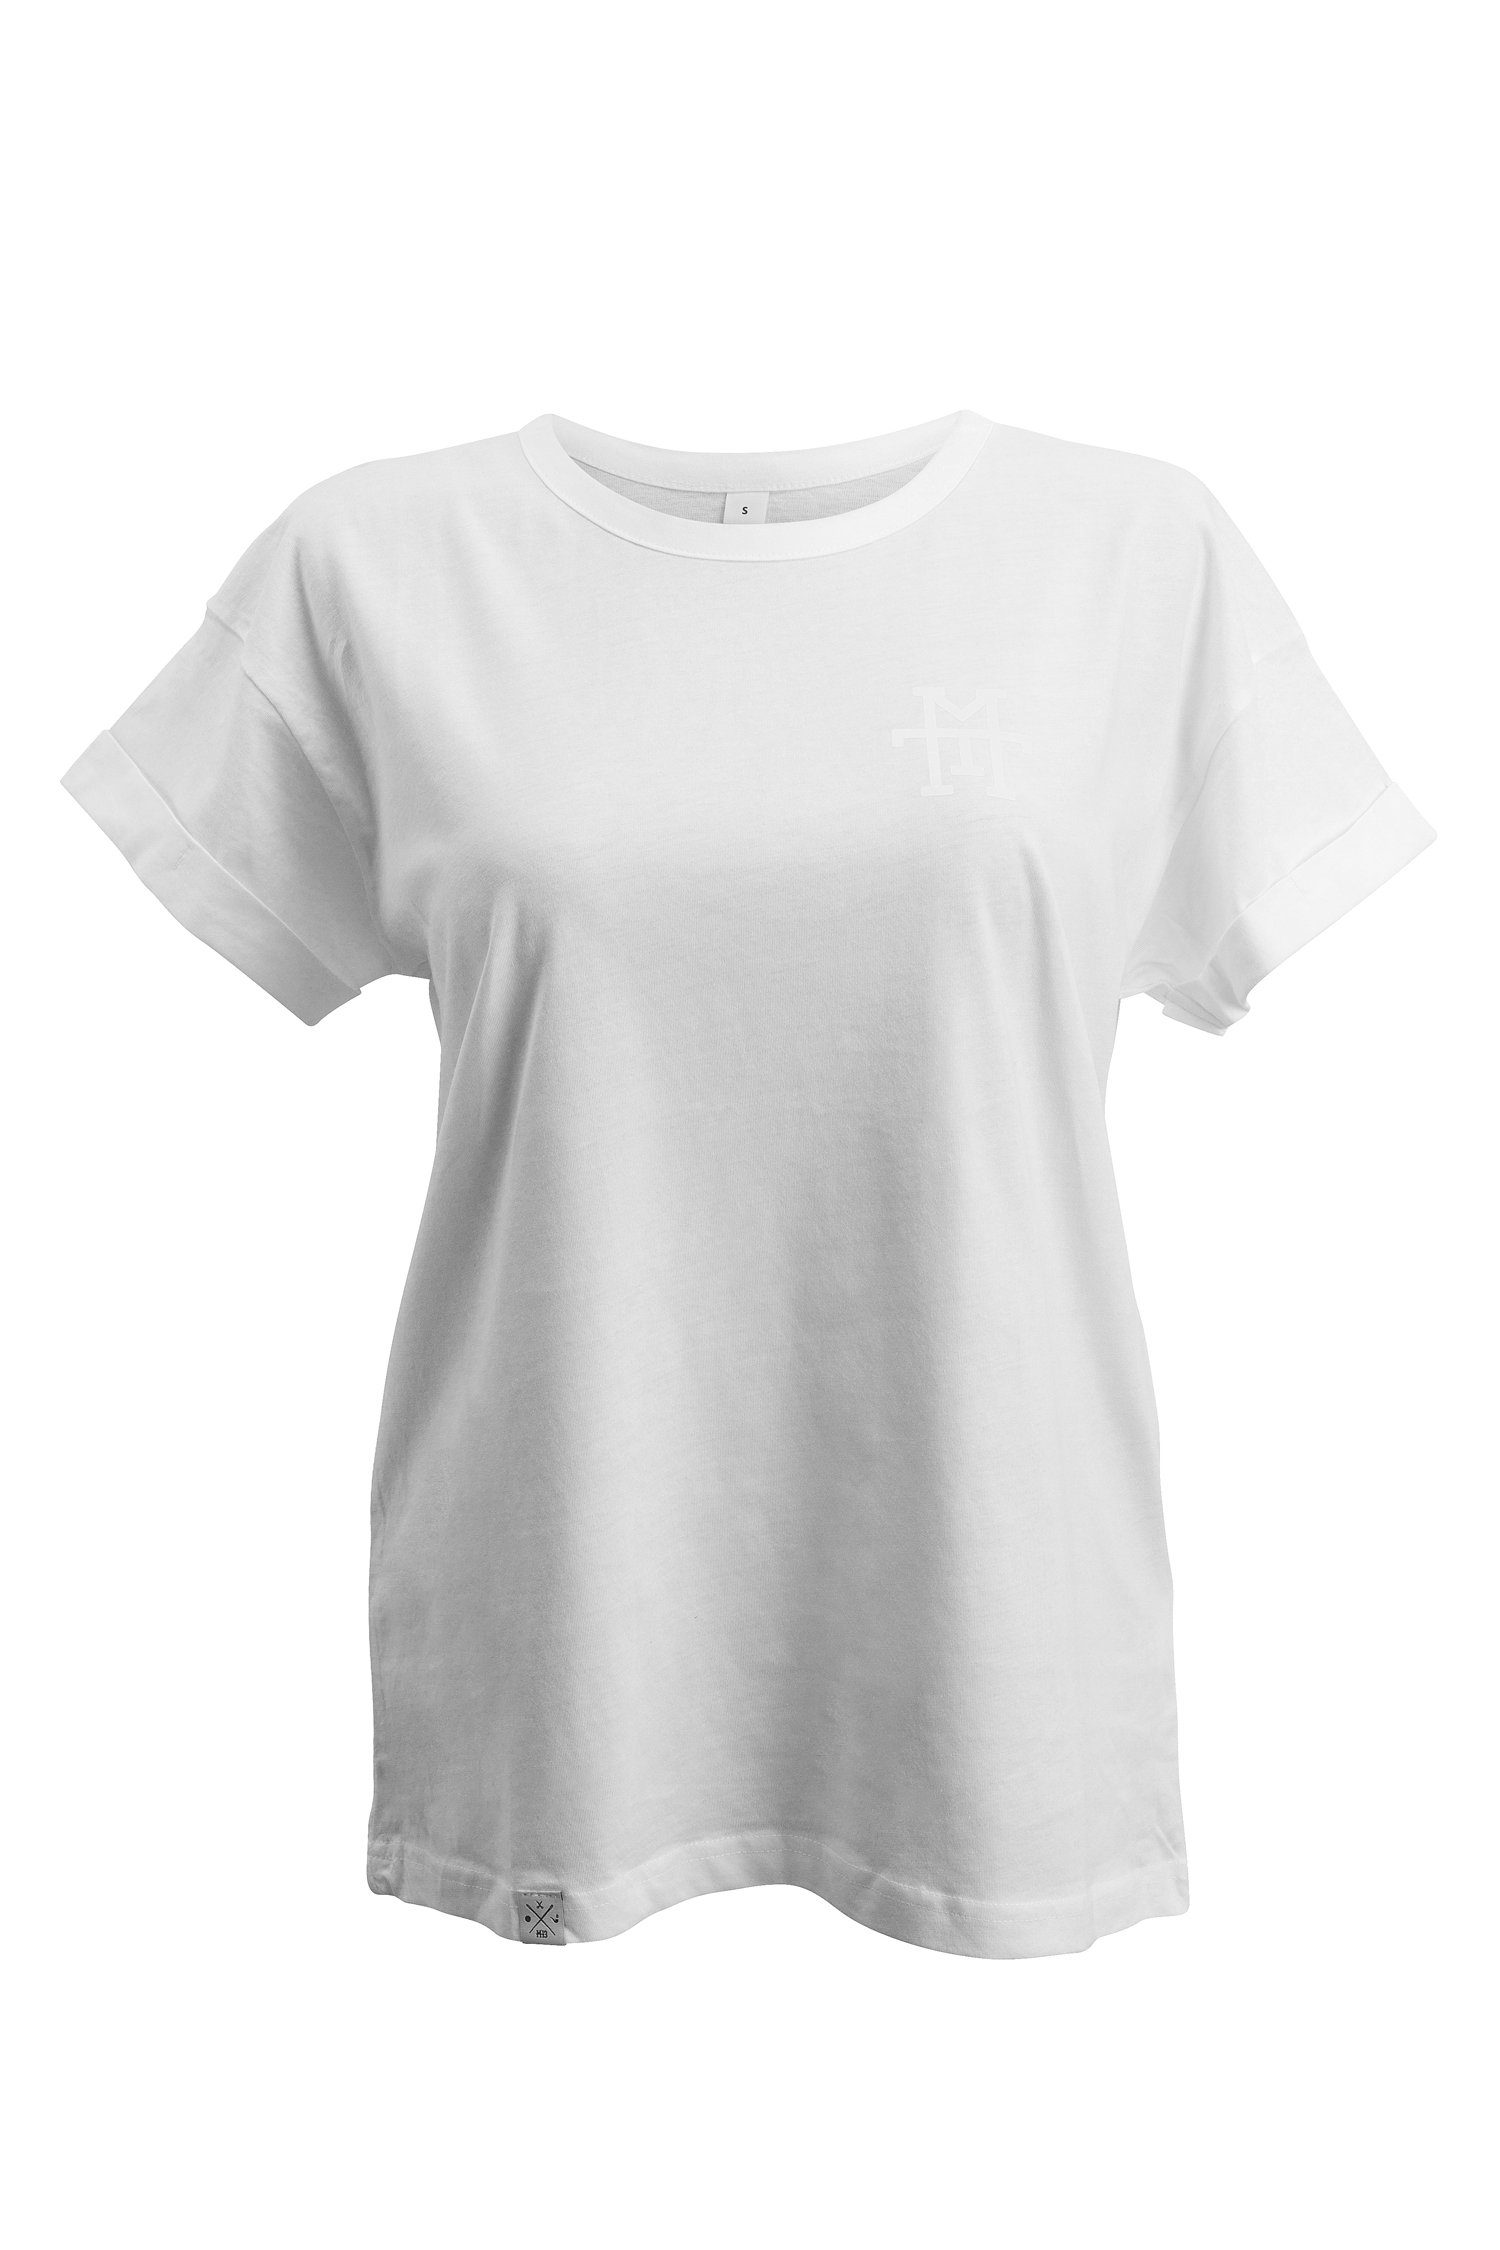 Manufaktur13 T-Shirt Boyfriend T-Shirt - Oversize 100% Weiß T-Shirt Baumwolle